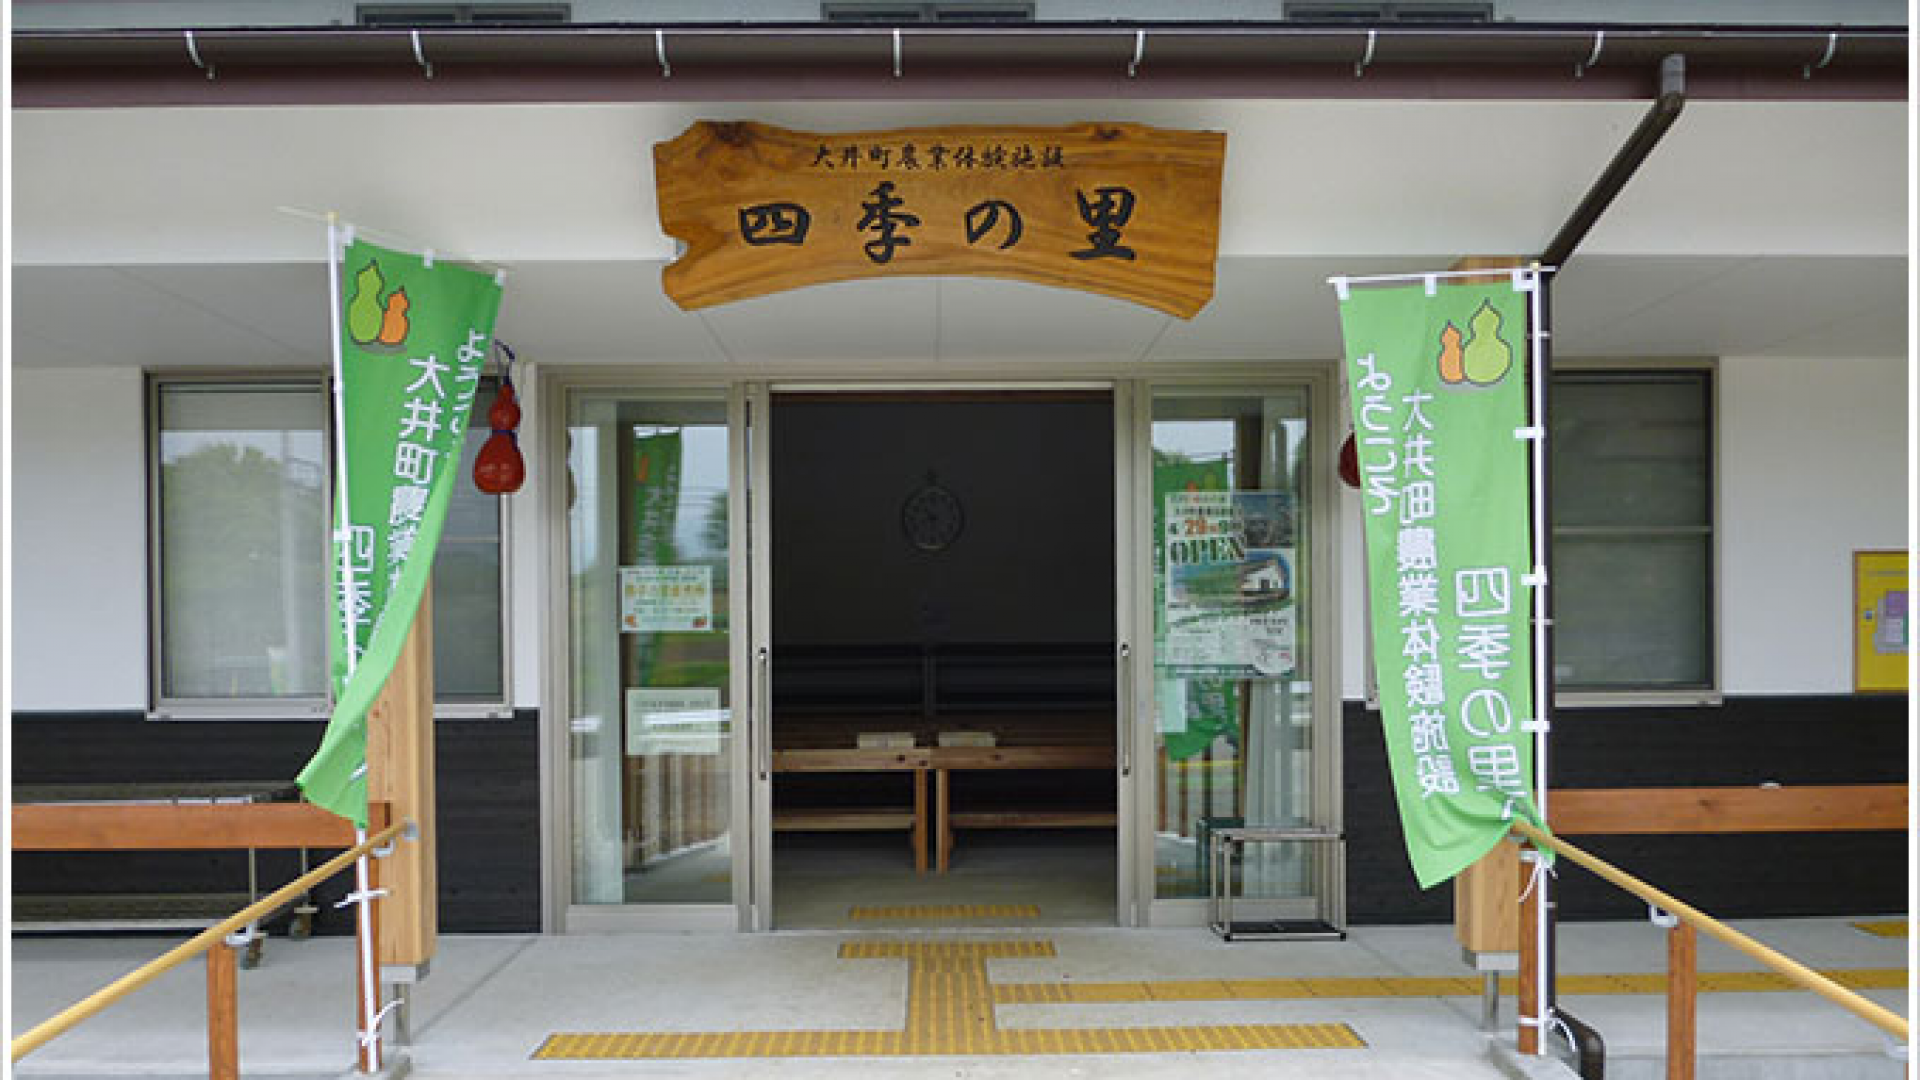 Instalación de experiencias agrícolas Oi Shiki no Sato